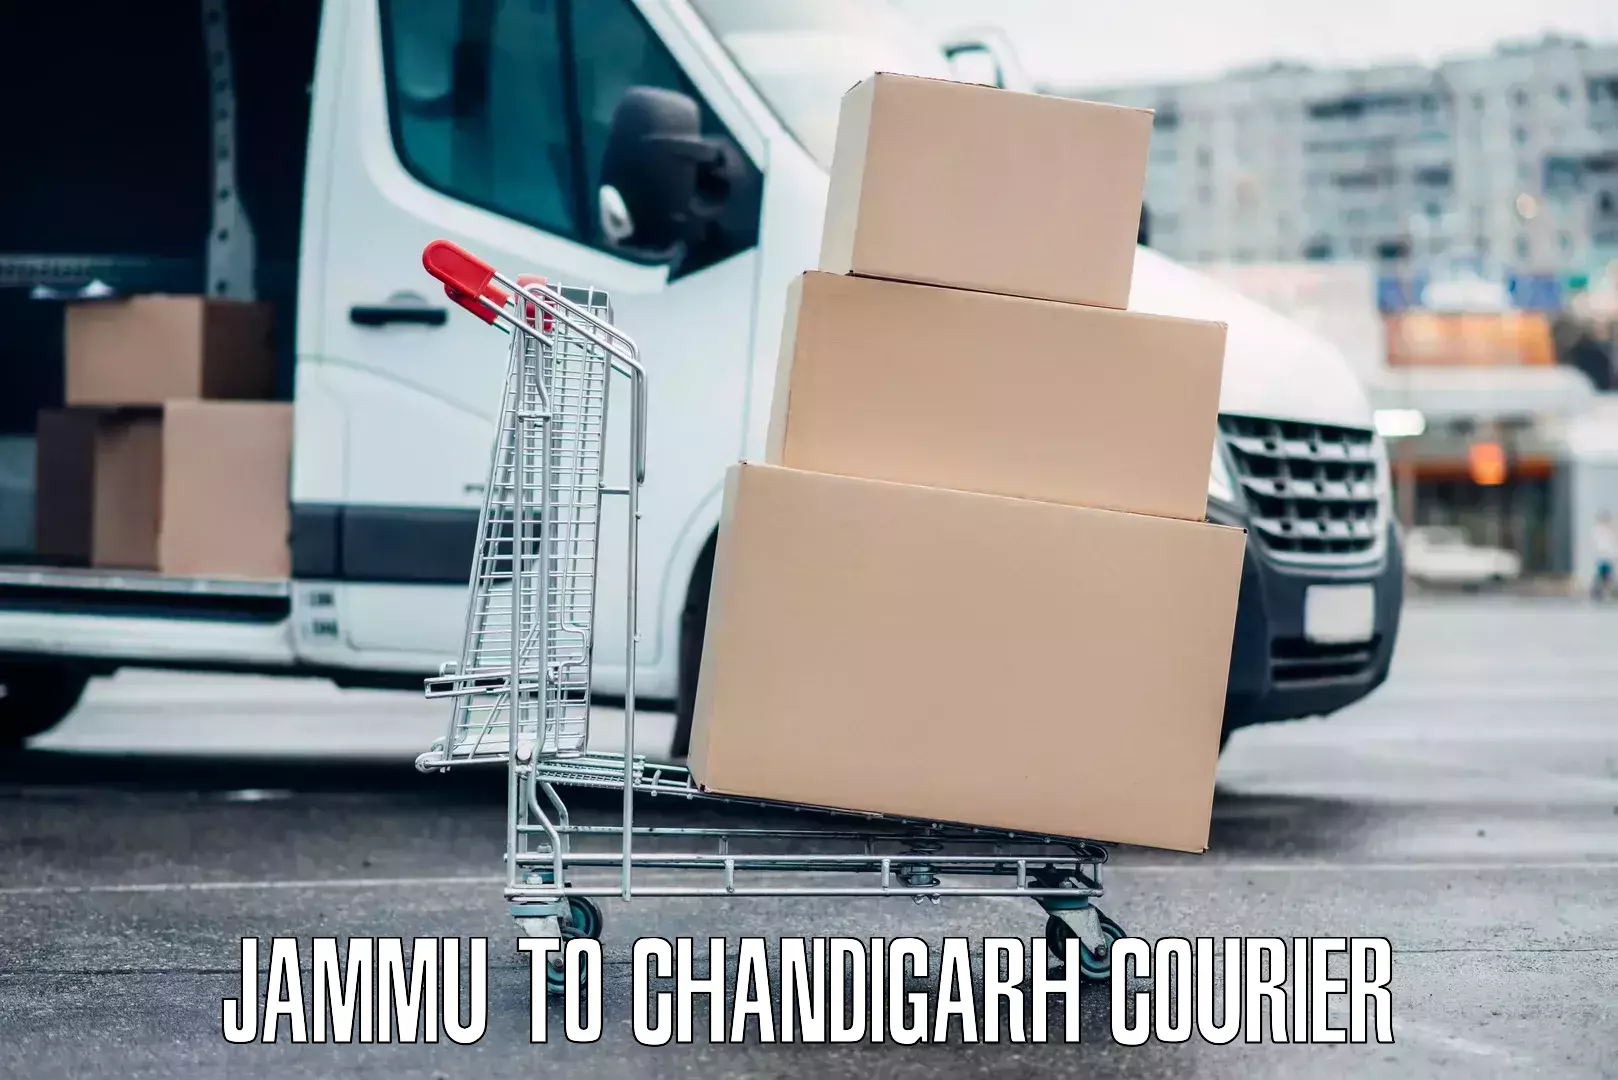 Door-to-door baggage service Jammu to Chandigarh